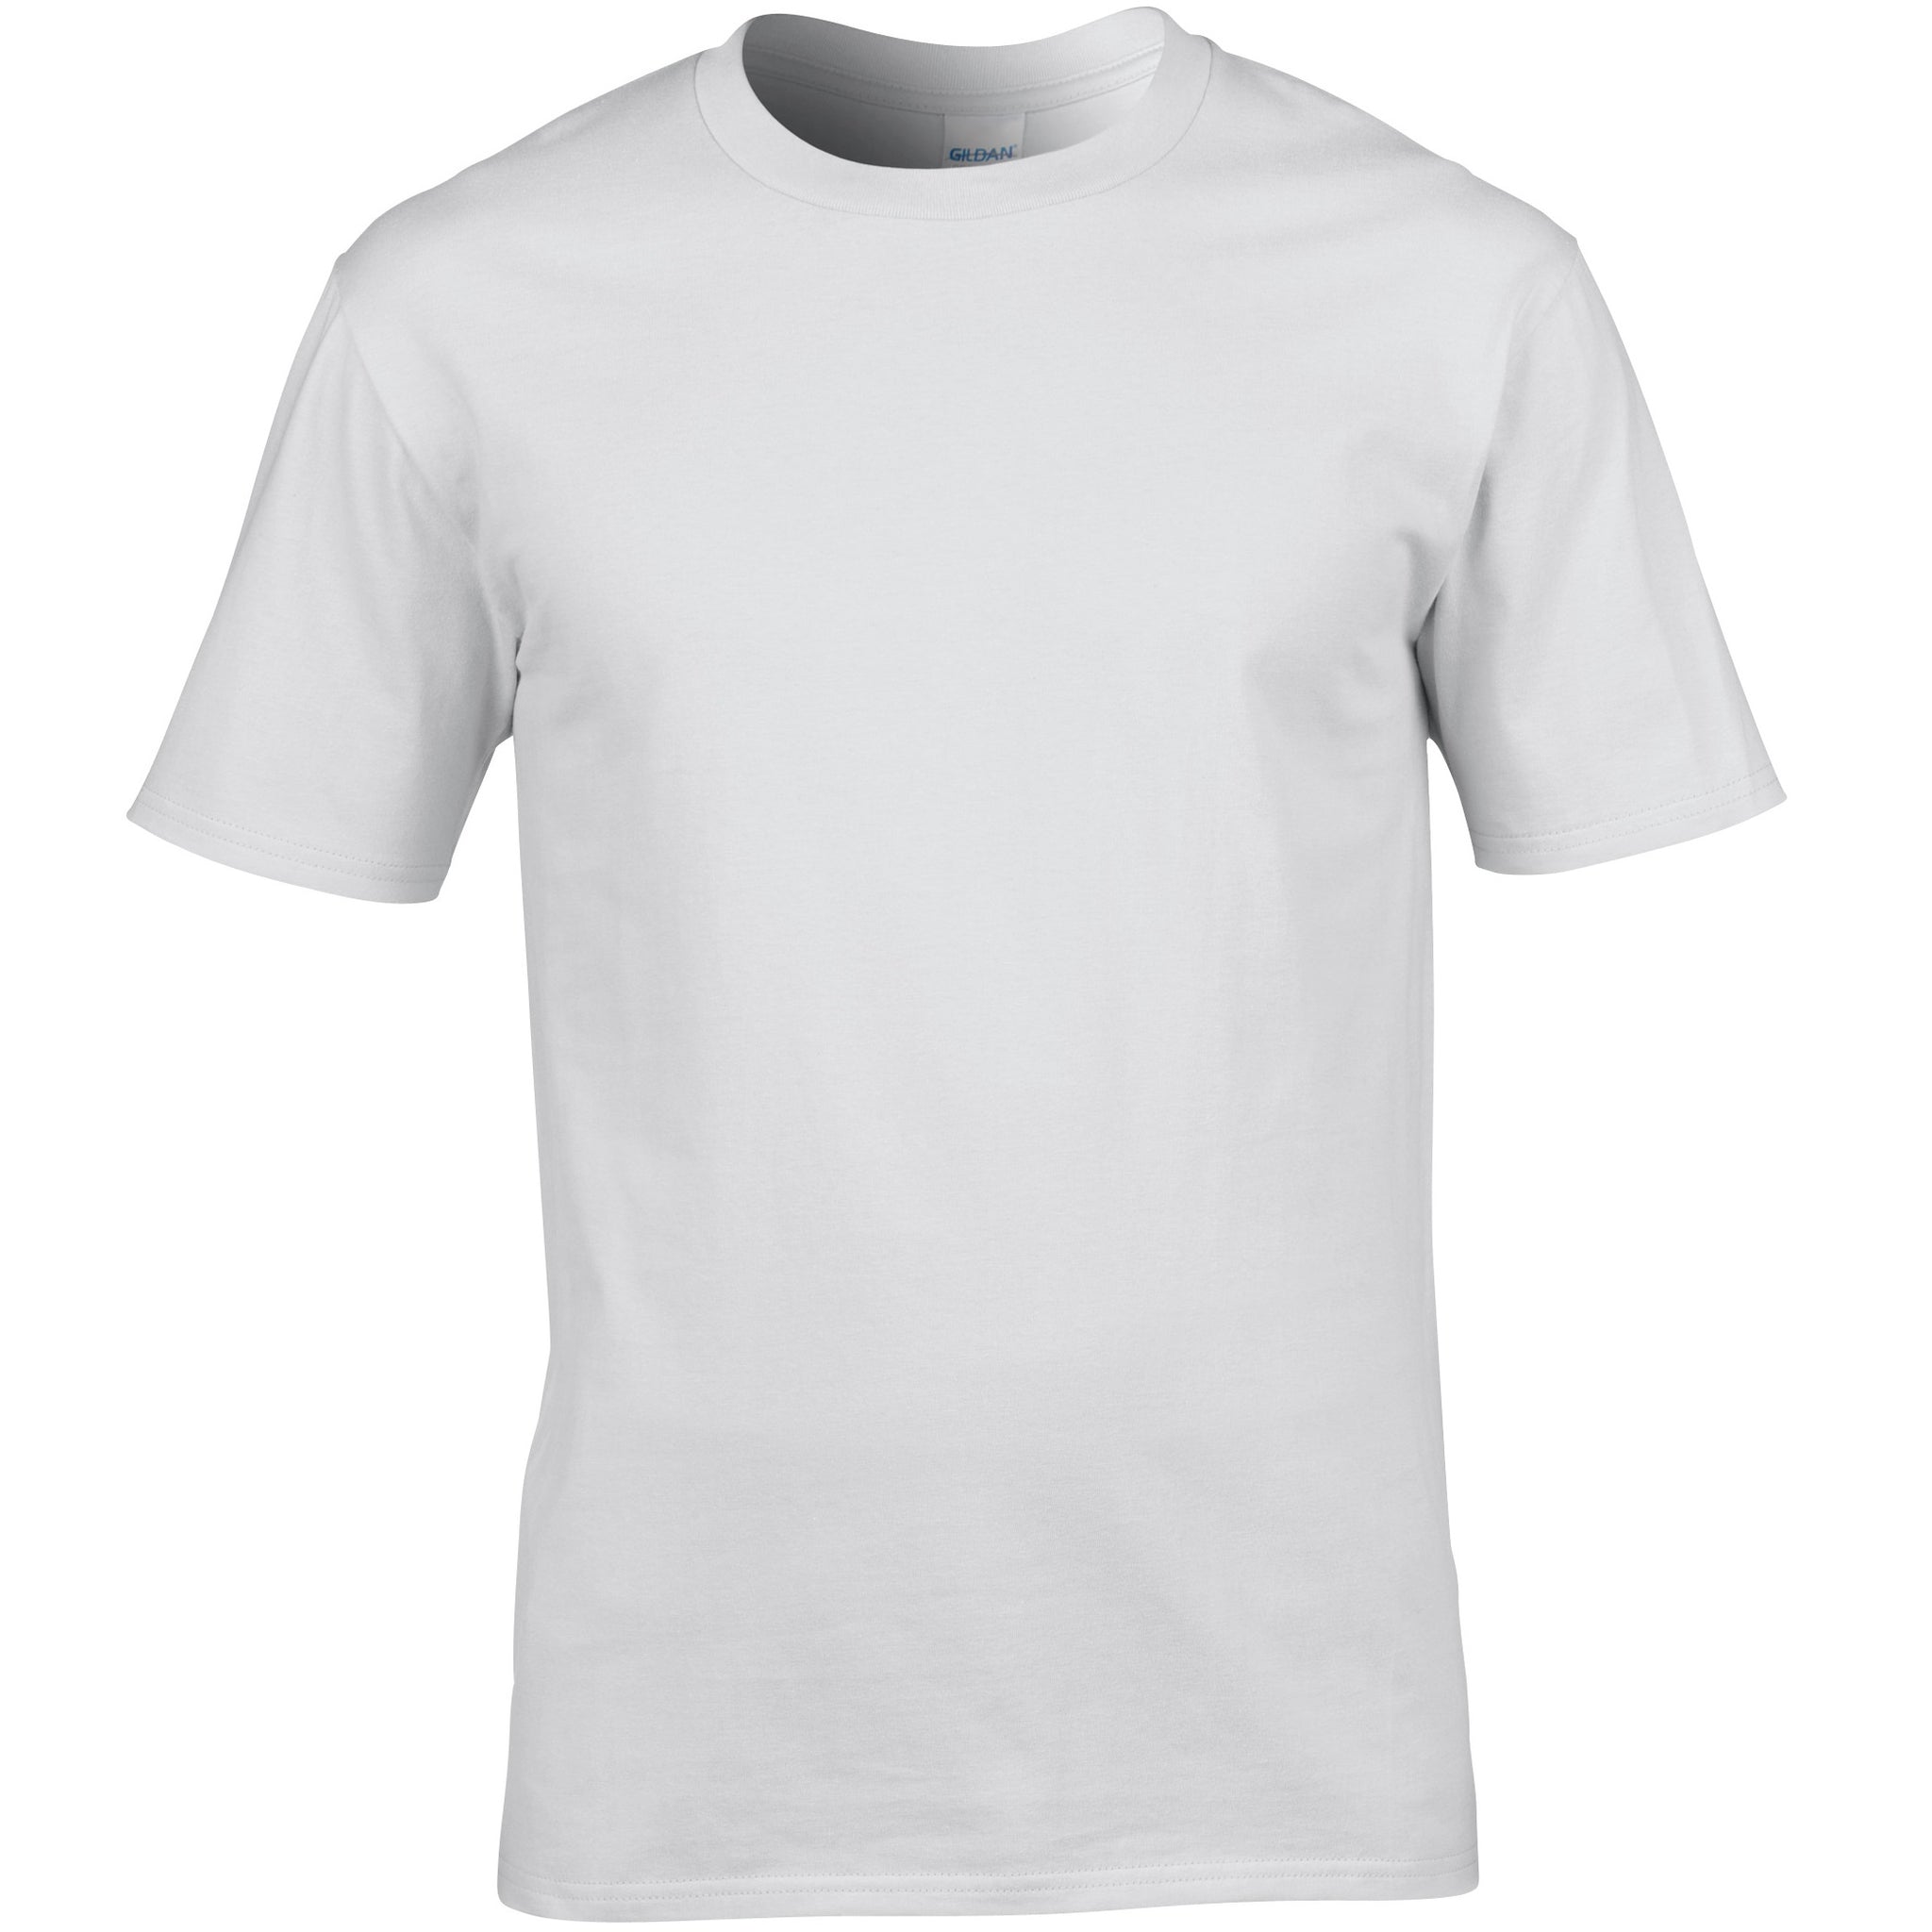 White Cotton T Shirt - choose logo